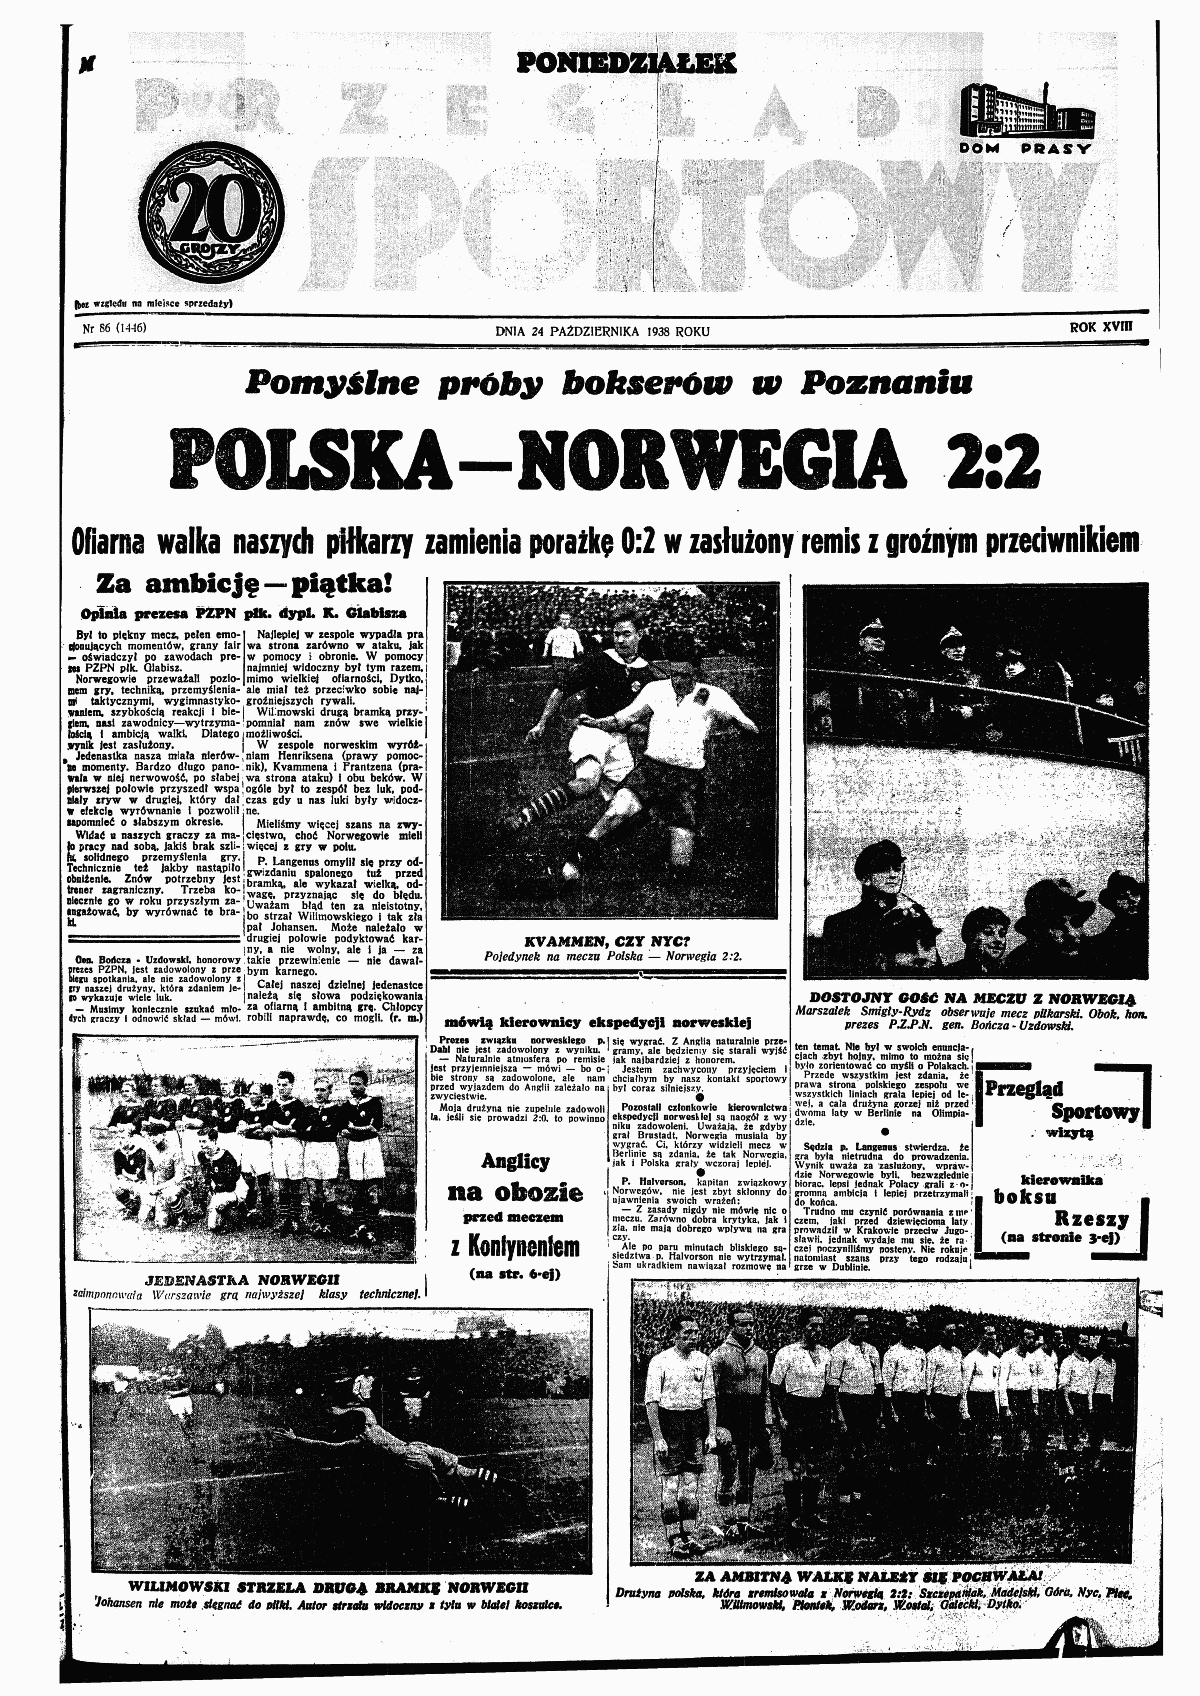 Przeglad Sportowy nr 86 z 24.10.1938